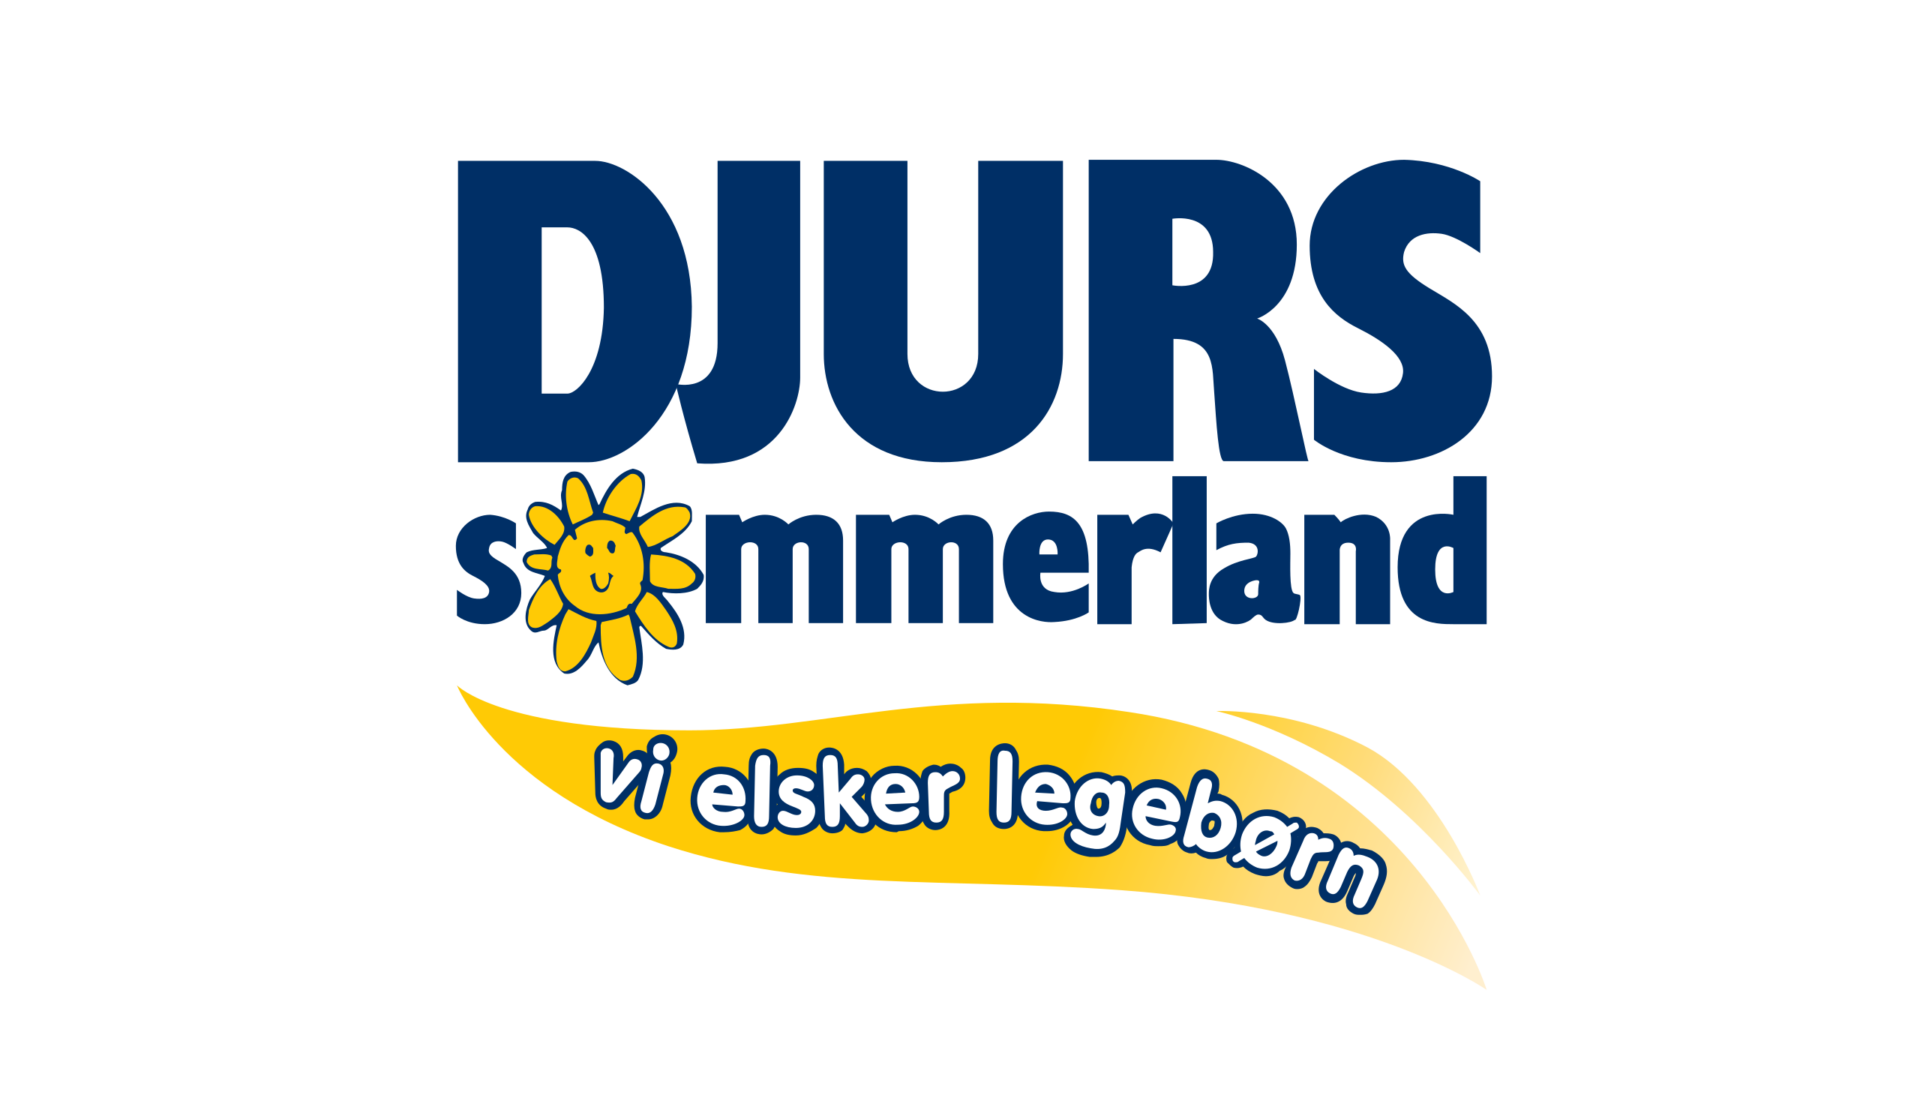 Djurs_Sommerland_-_Vi_elsker_legebørn_(Official_Logo).svg